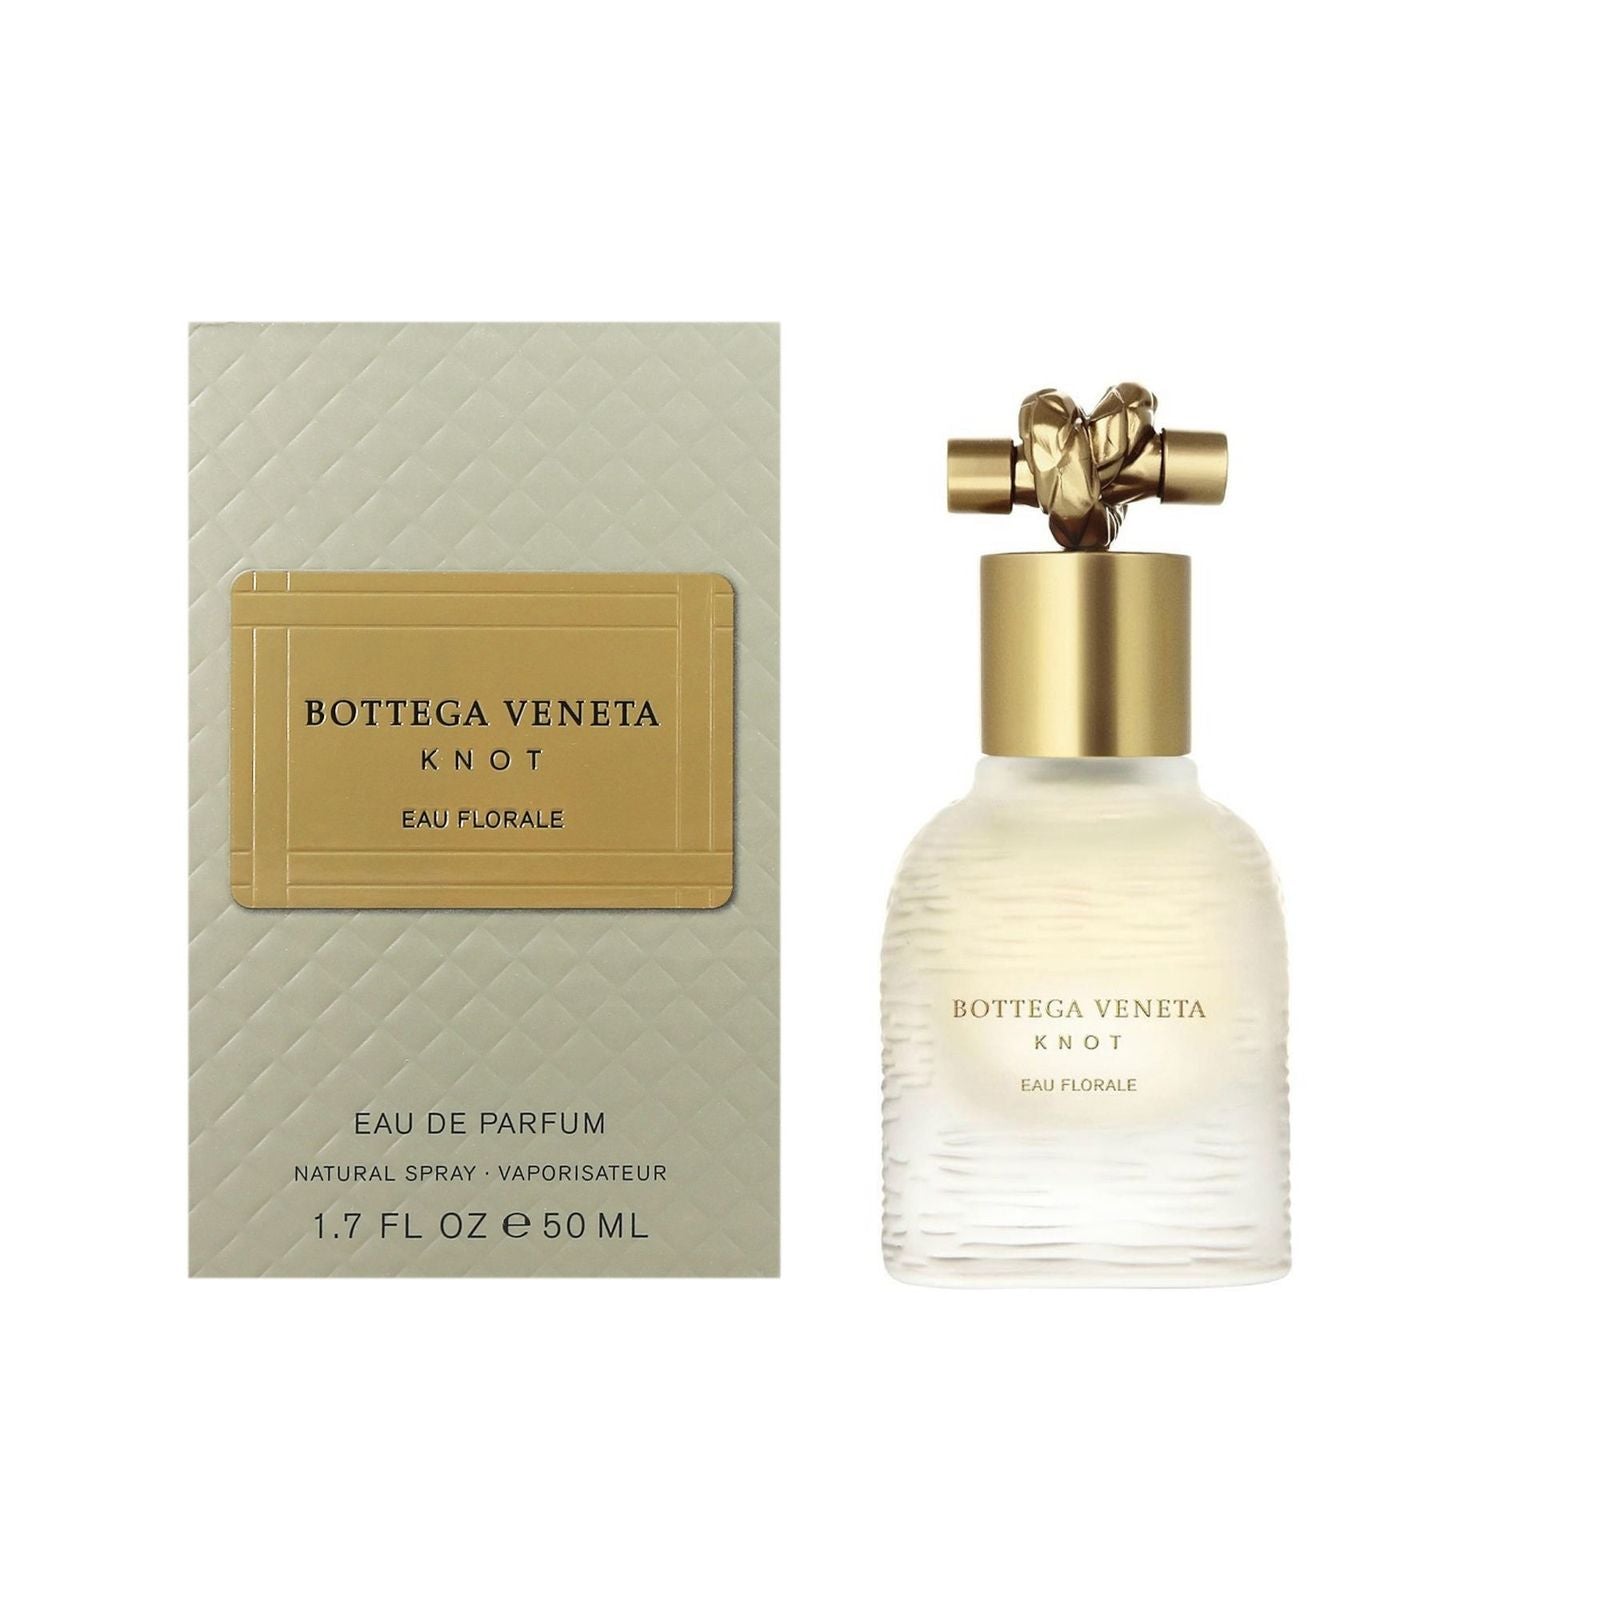 Bottega Veneta Knot Eau Florale Perfume For Women By Bottega Veneta In